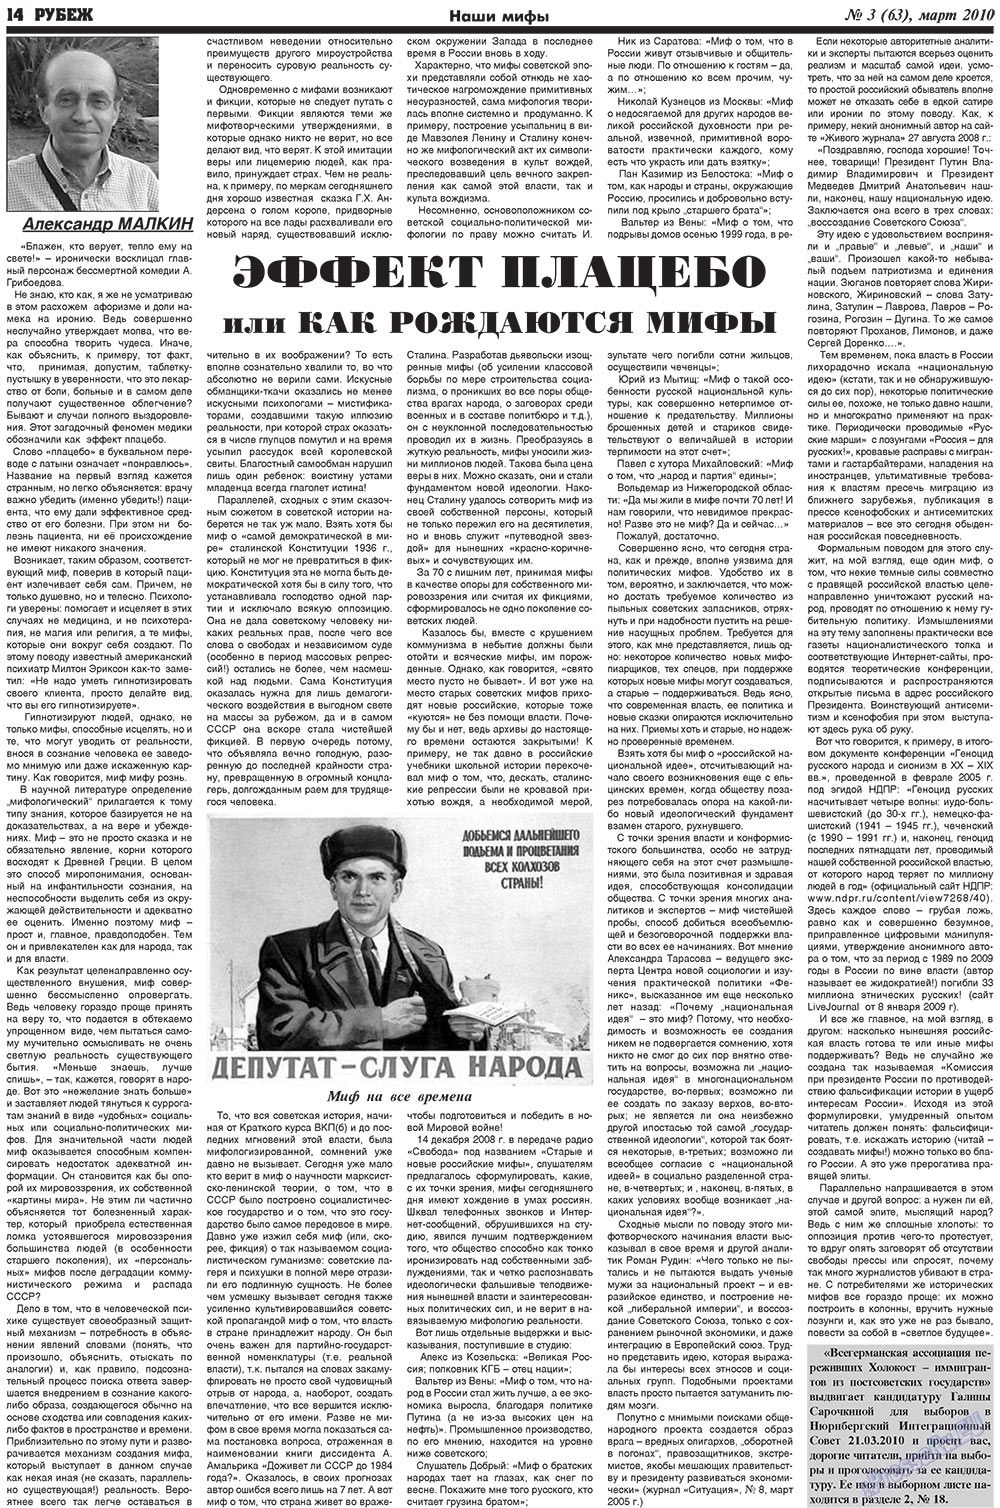 Рубеж (газета). 2010 год, номер 3, стр. 14